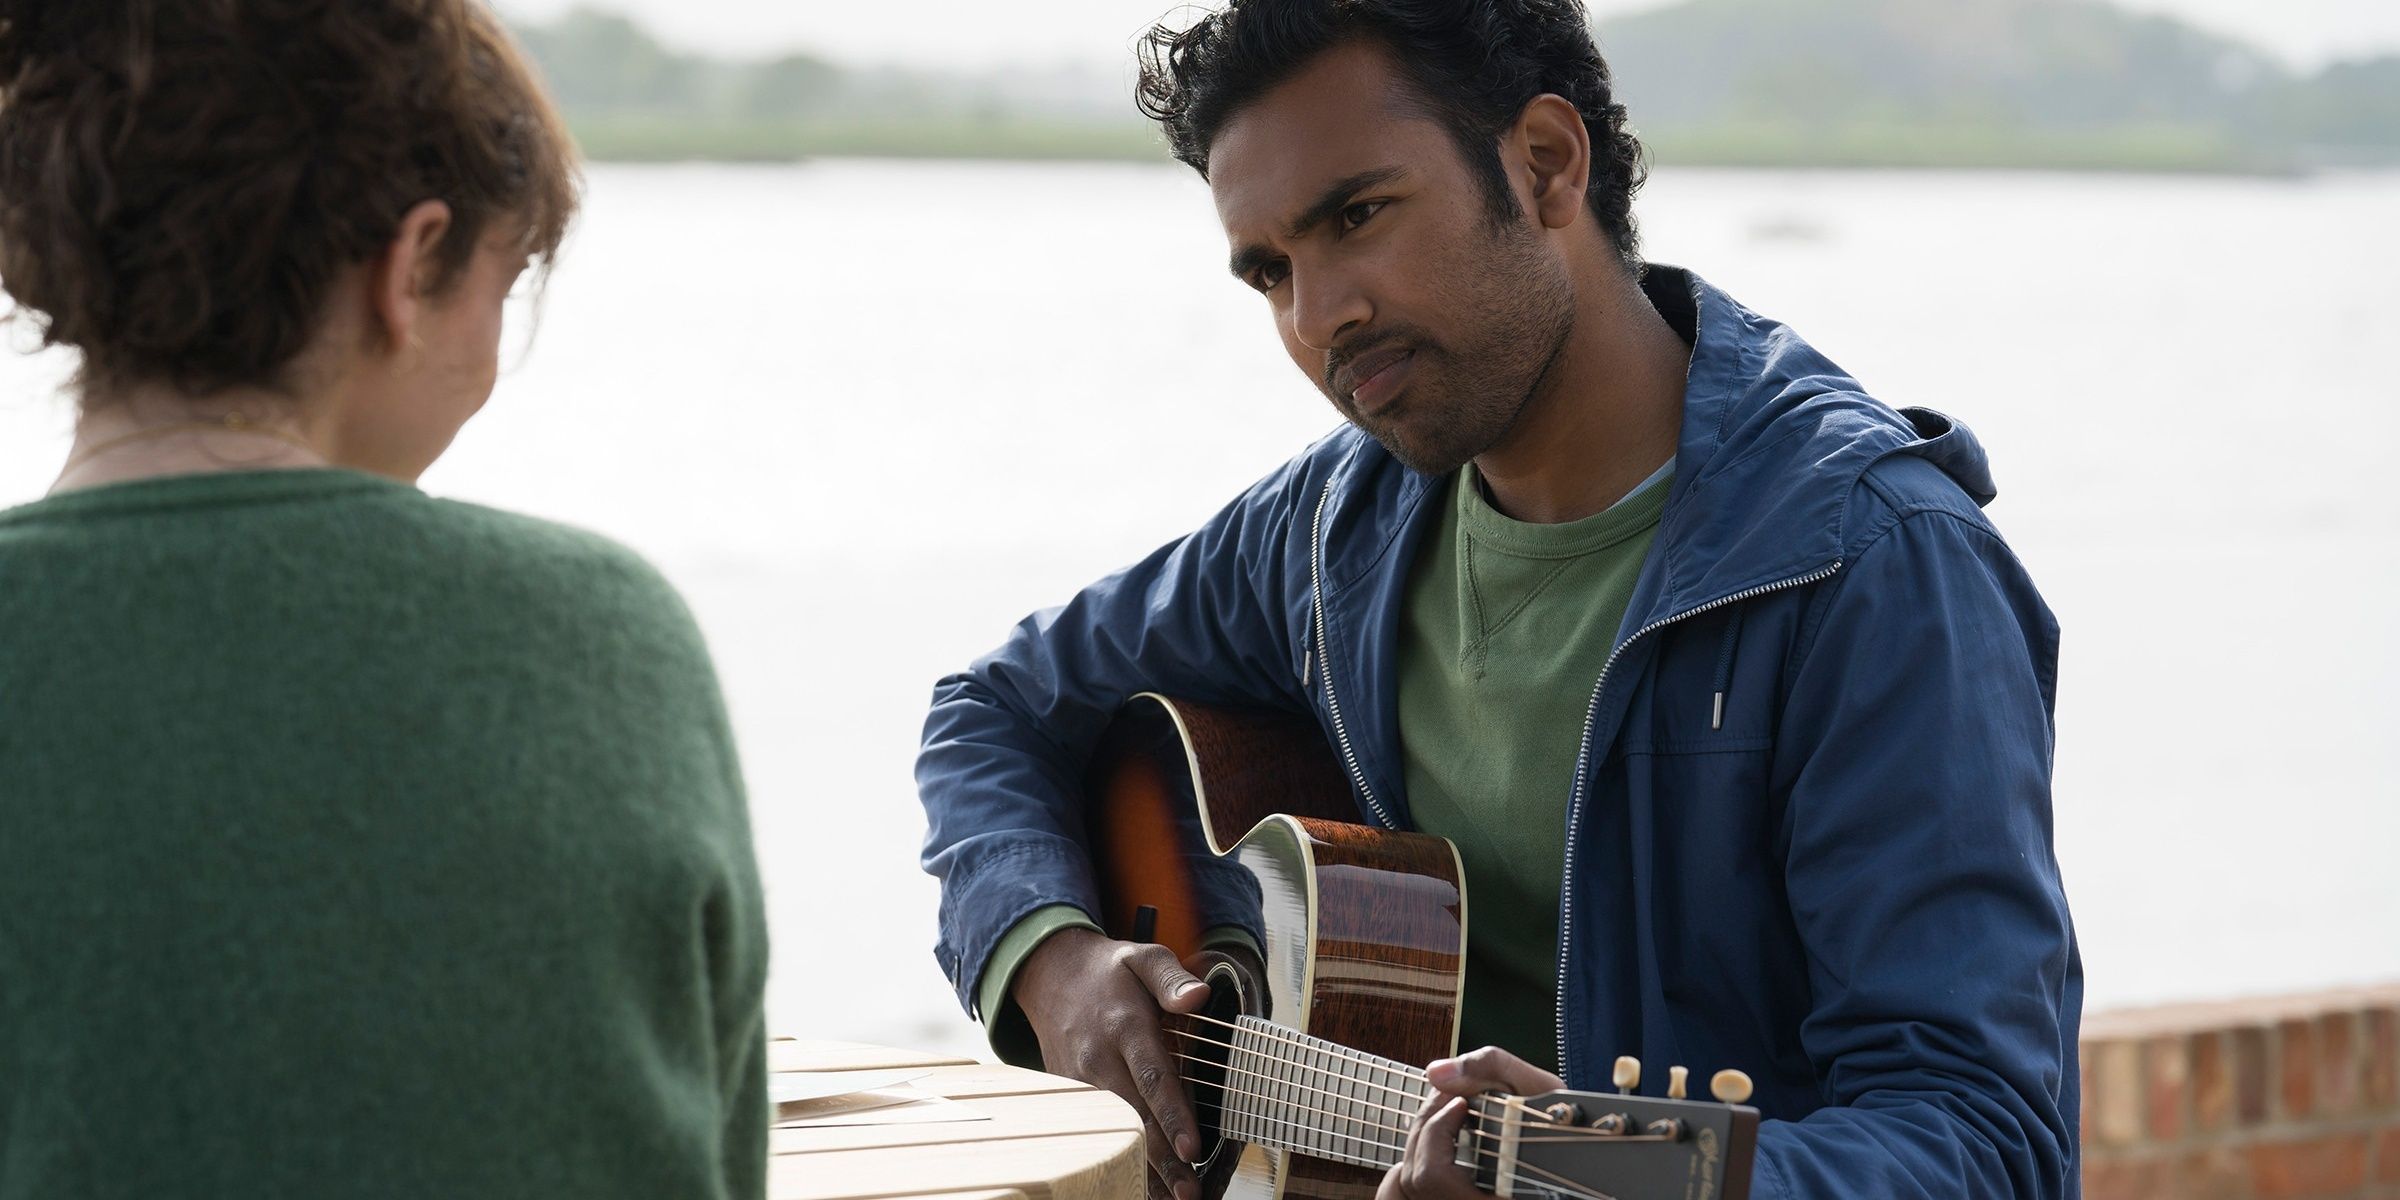 Himesh Patel plays guitar